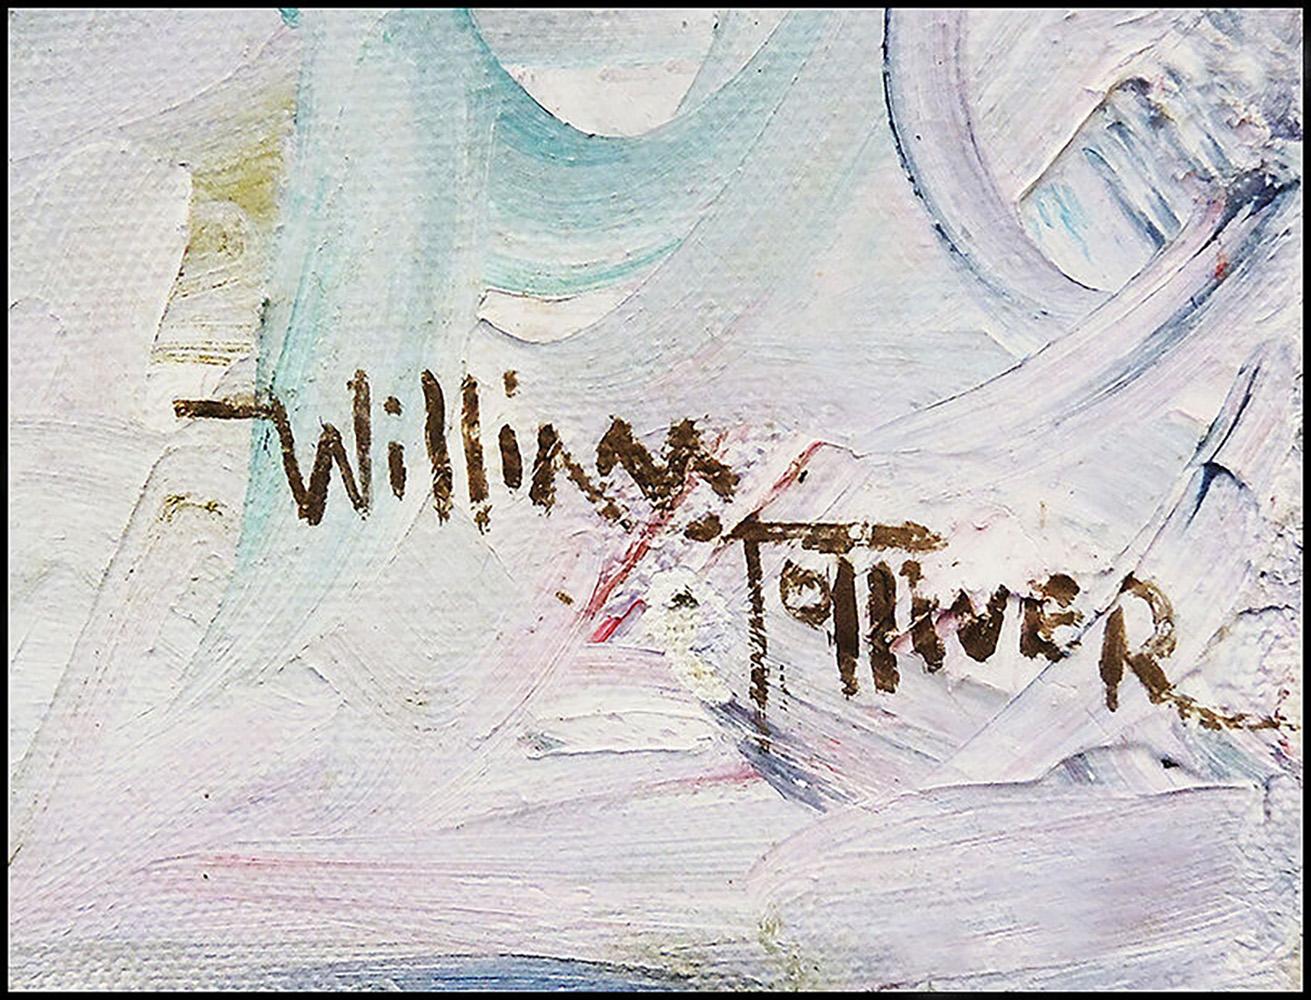 Artist: William Tolliver
Title: Original Golden Girl
Medium: Oil on Canvas
Edition Number: Original Painting
Artwork Size: 20 x 16 Unframed
Frame Size: 30 x 26 Framed